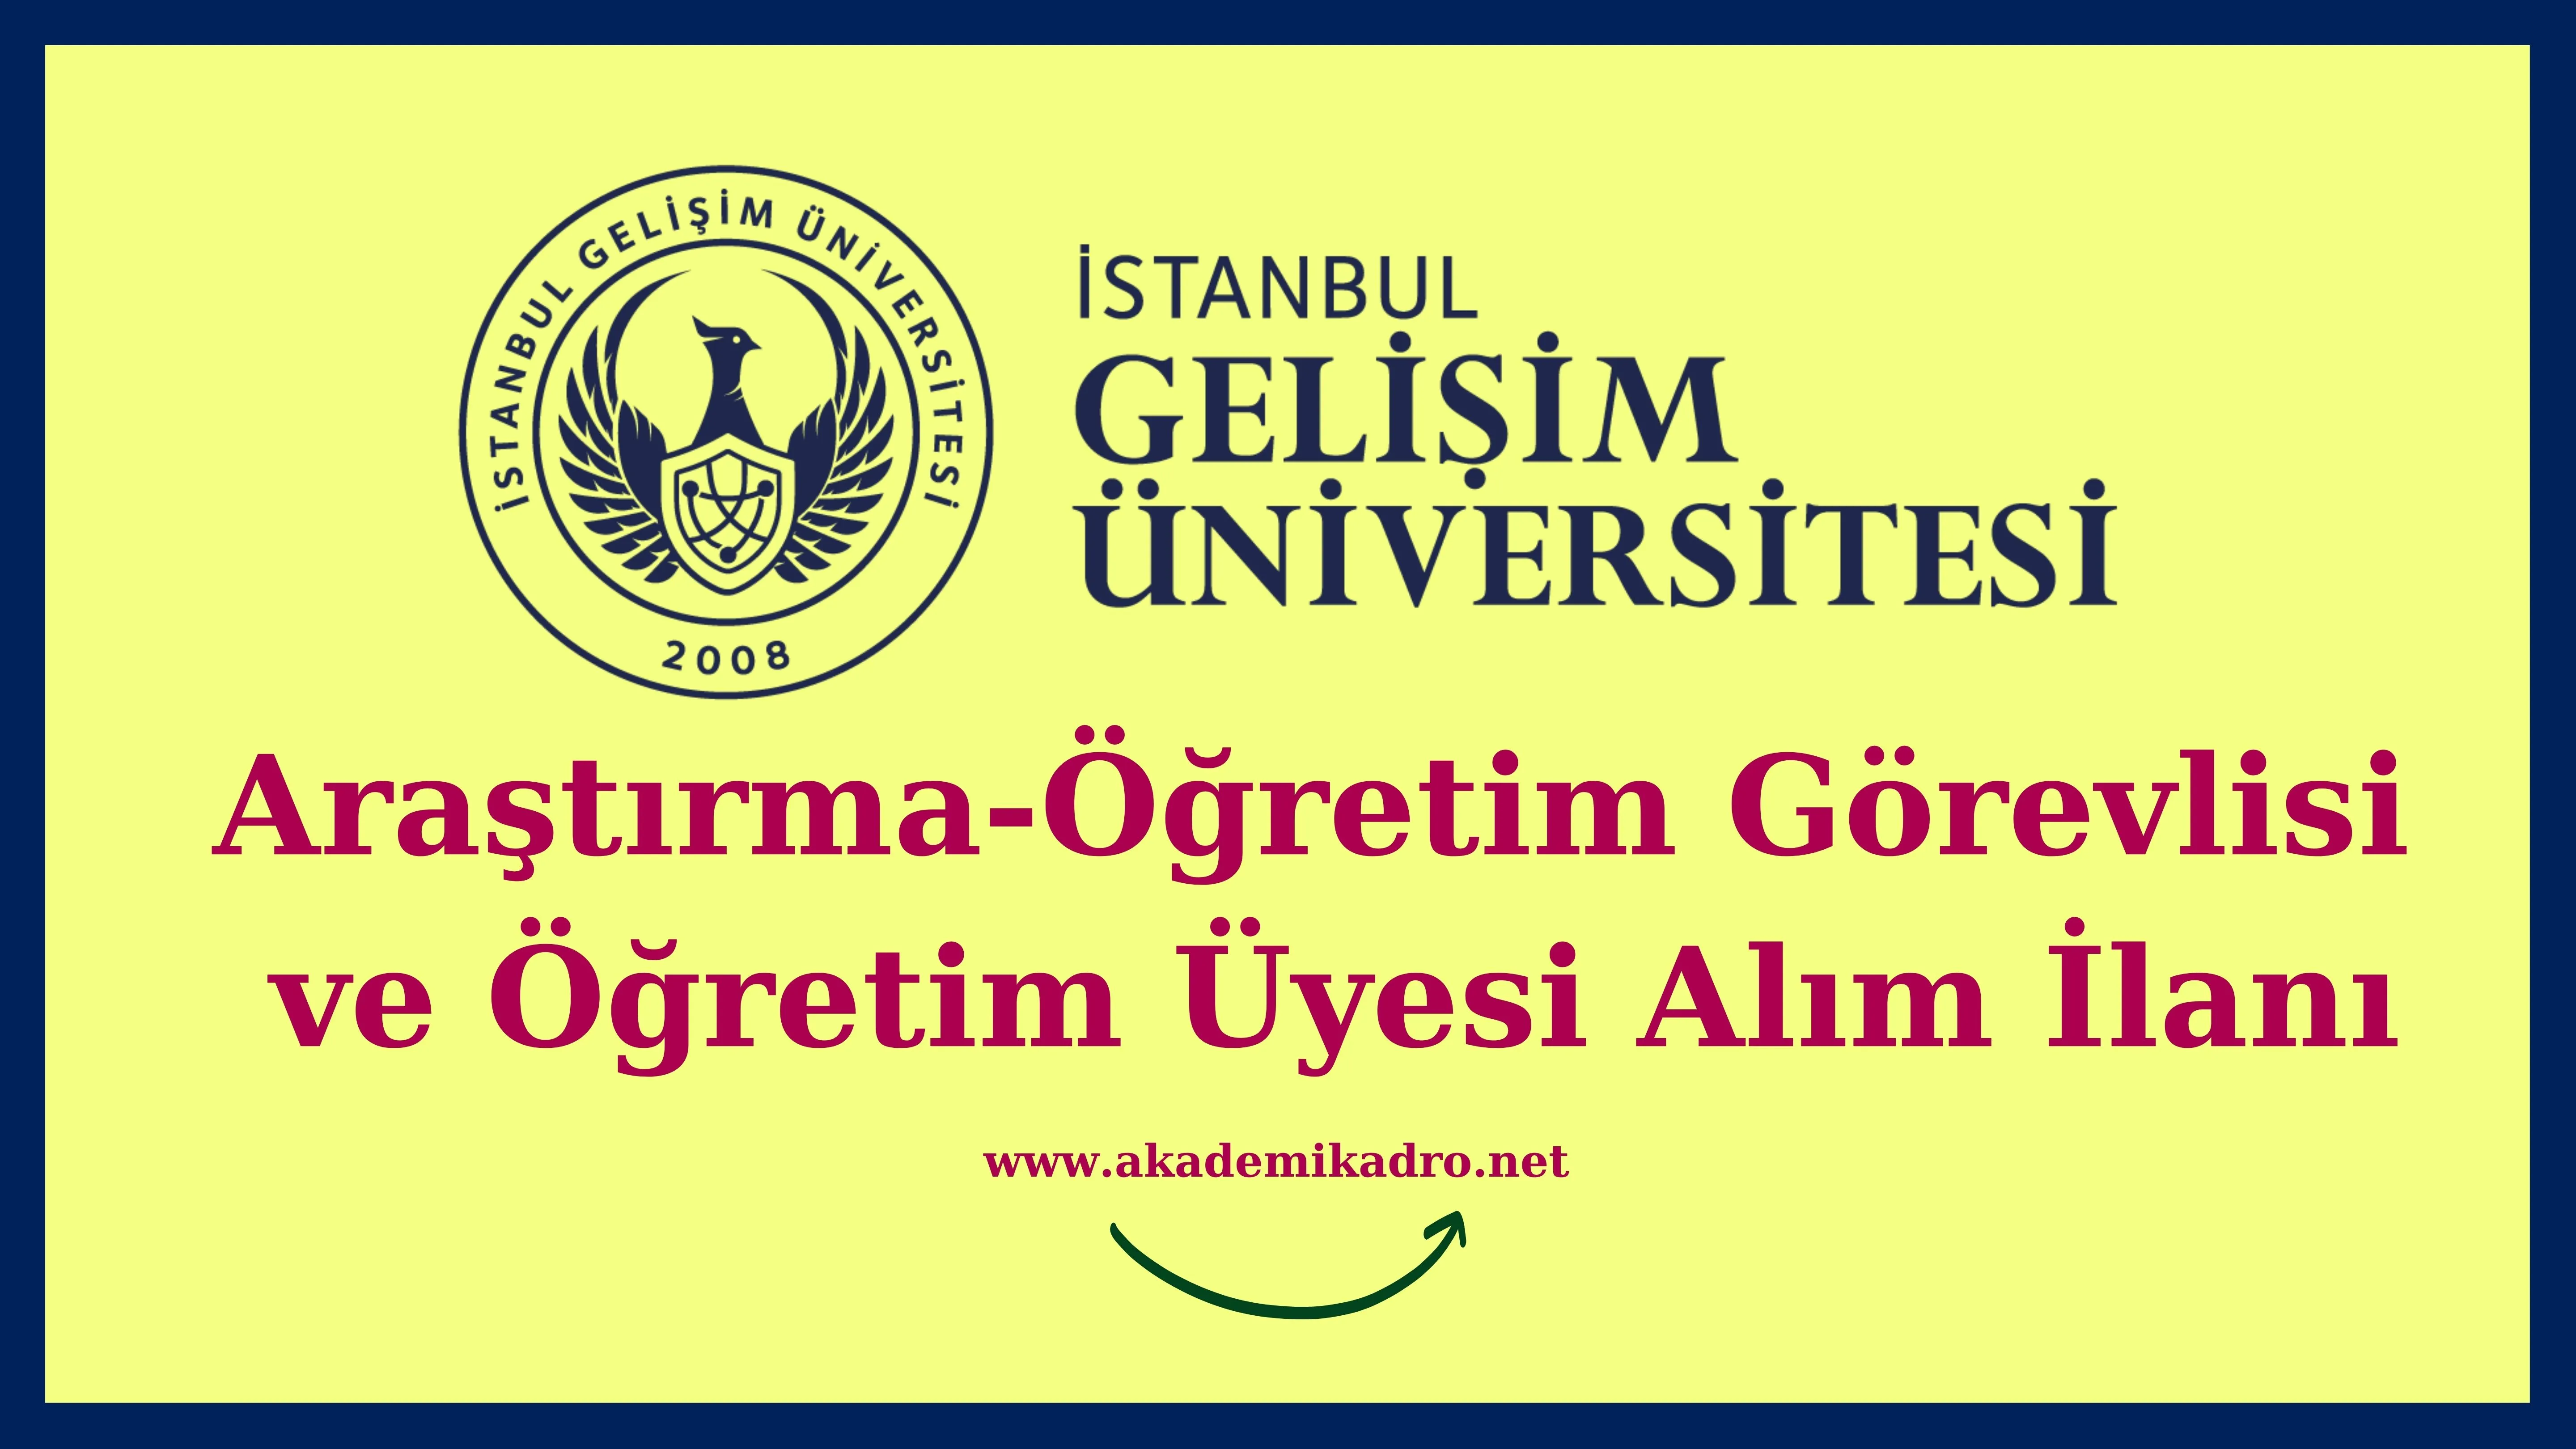 İstanbul Gelişim Üniversitesi 23 Öğretim görevlisi, 17 Araştırma görevlisi ve 5 Öğretim üyesi olmak üzere 45 Öğretim elemanı alacak.